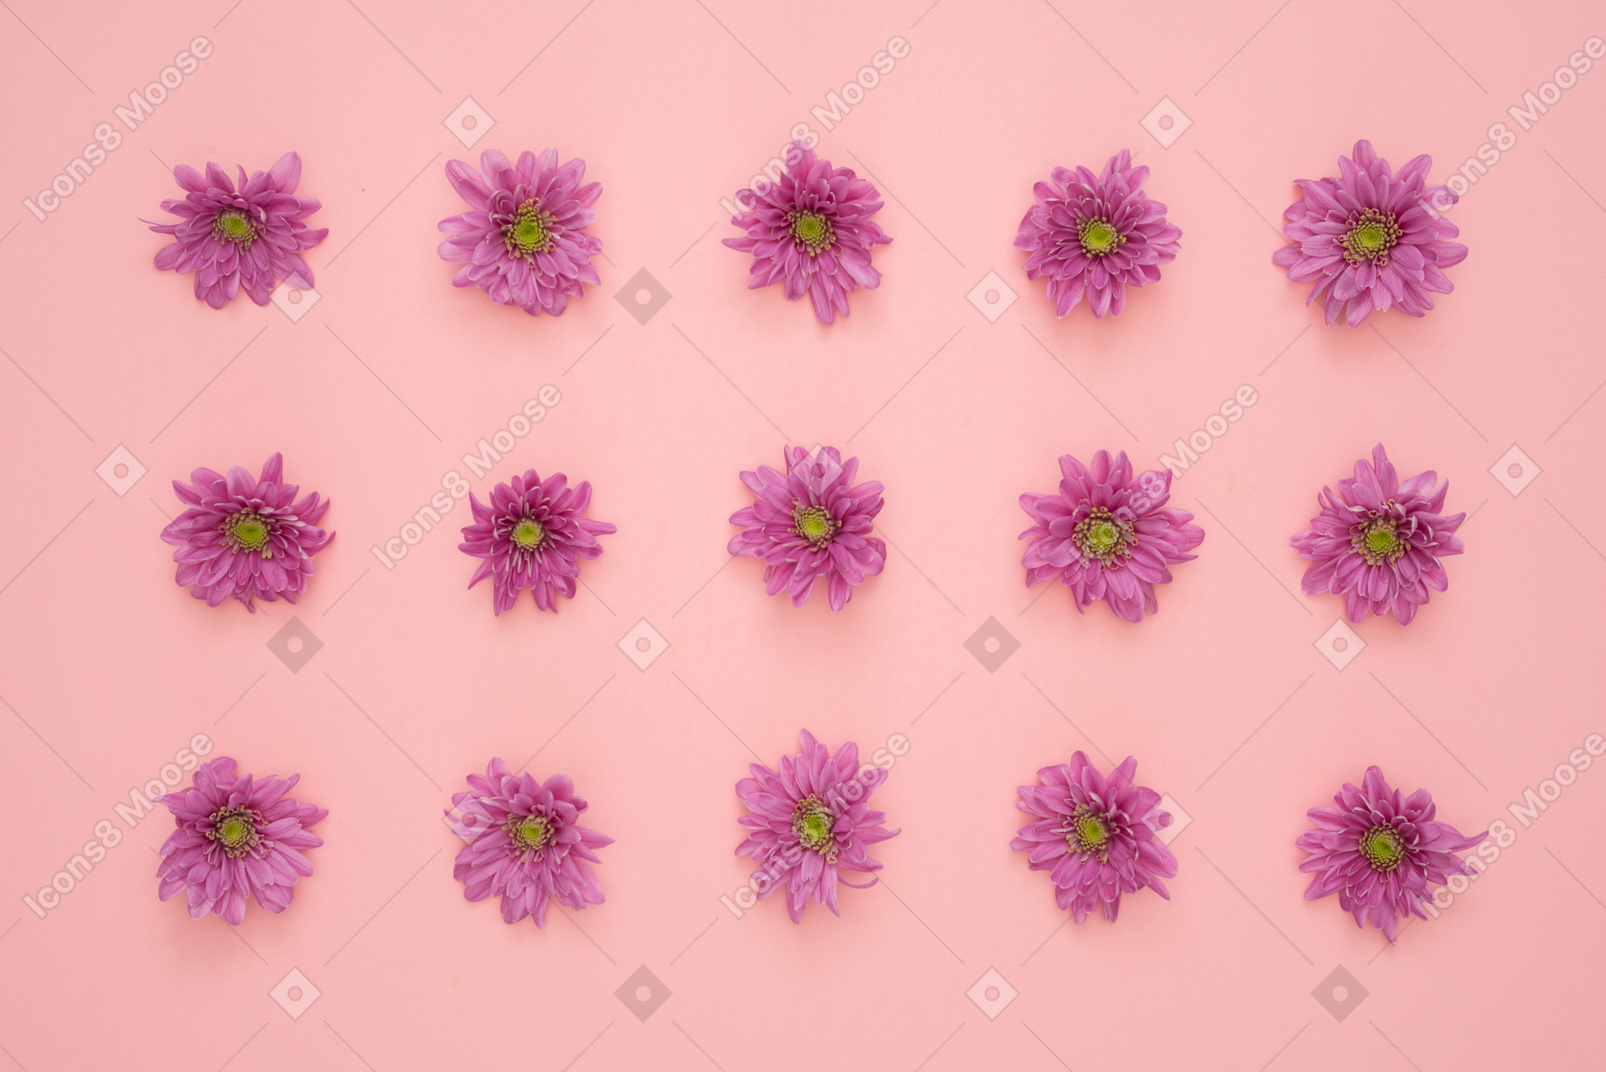 Cabeças de flor